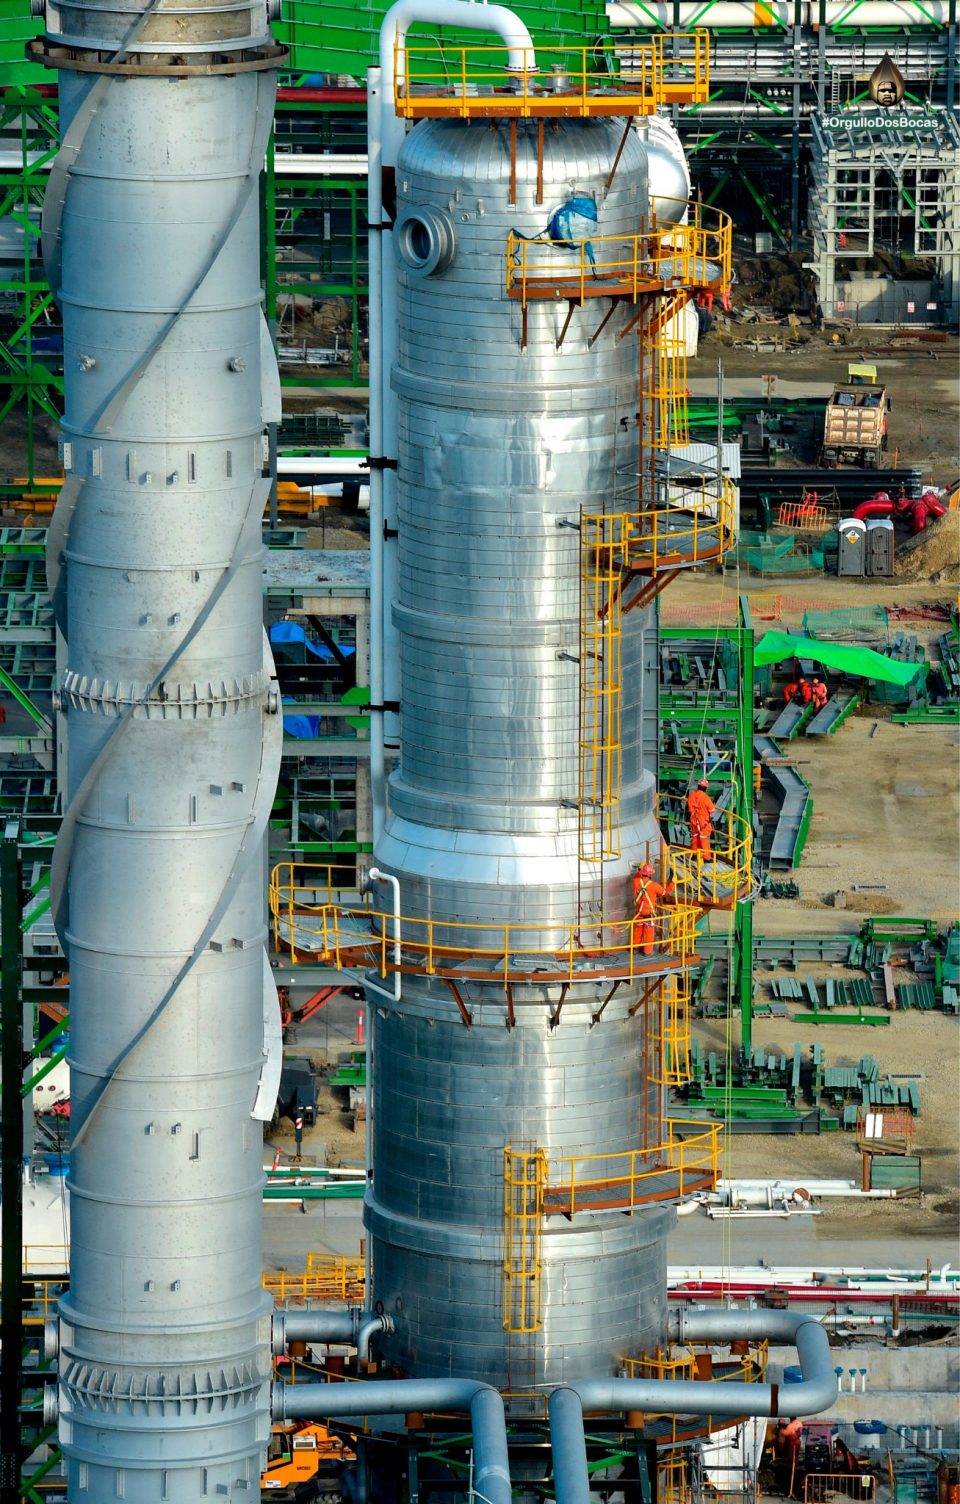 Torre fraccionadora, clave de la planta hidrotratadora de naftas